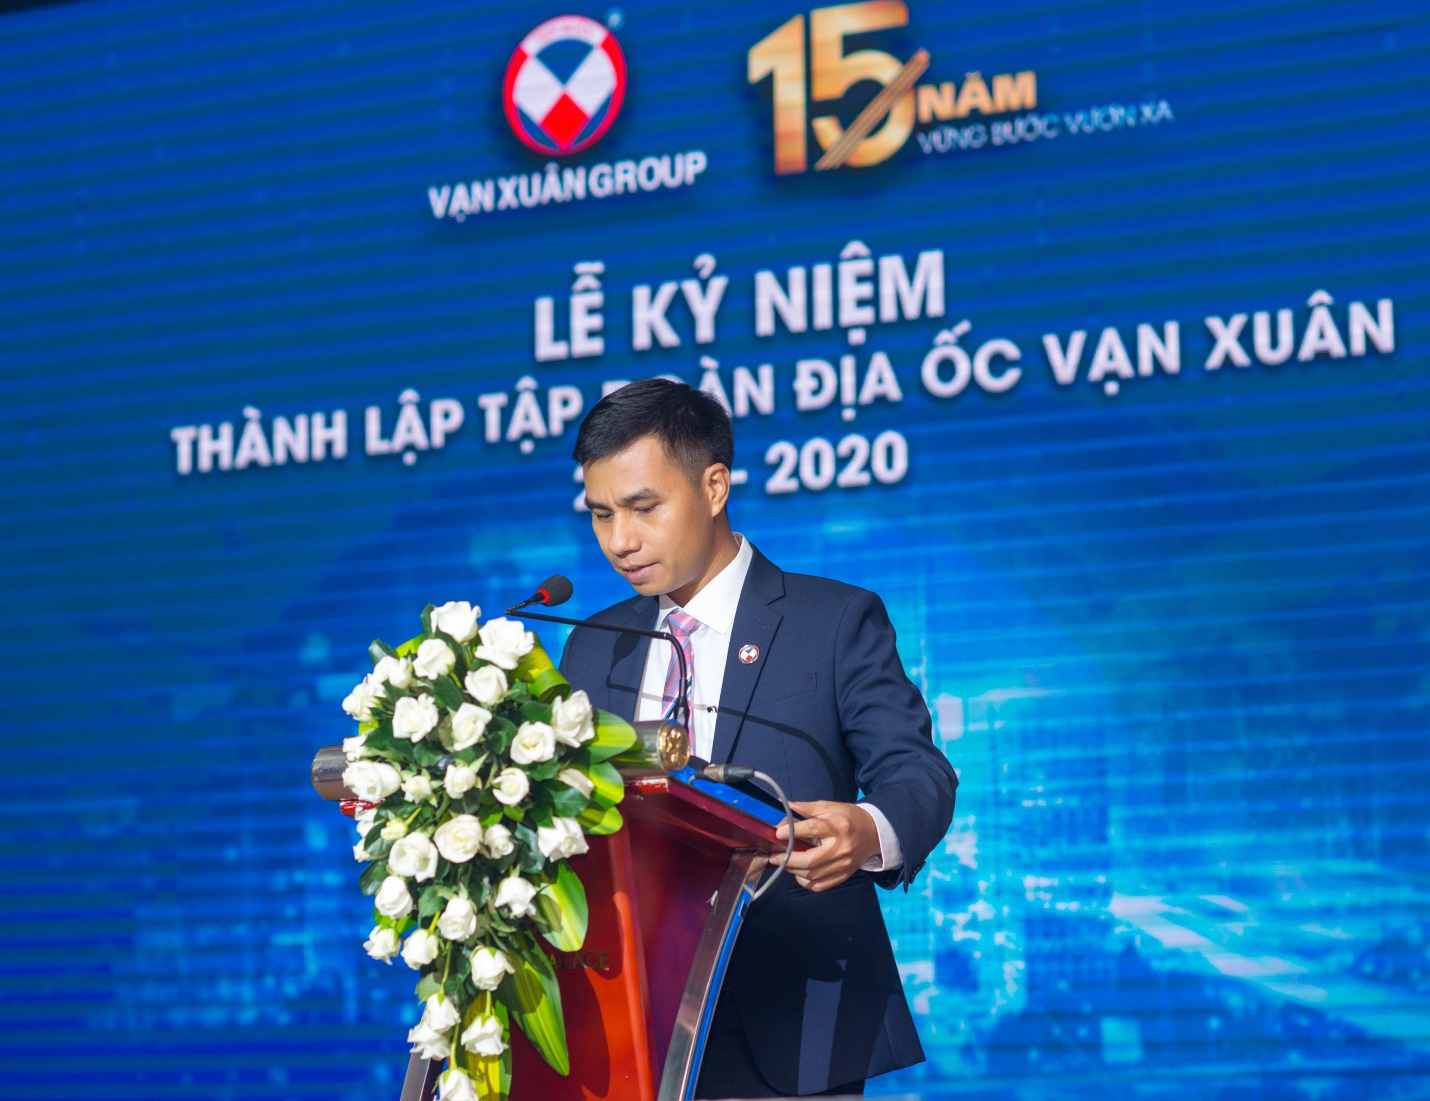 Vạn Xuân Group khẳng định uy tín thương hiệu chủ đầu tư - Ảnh 1.